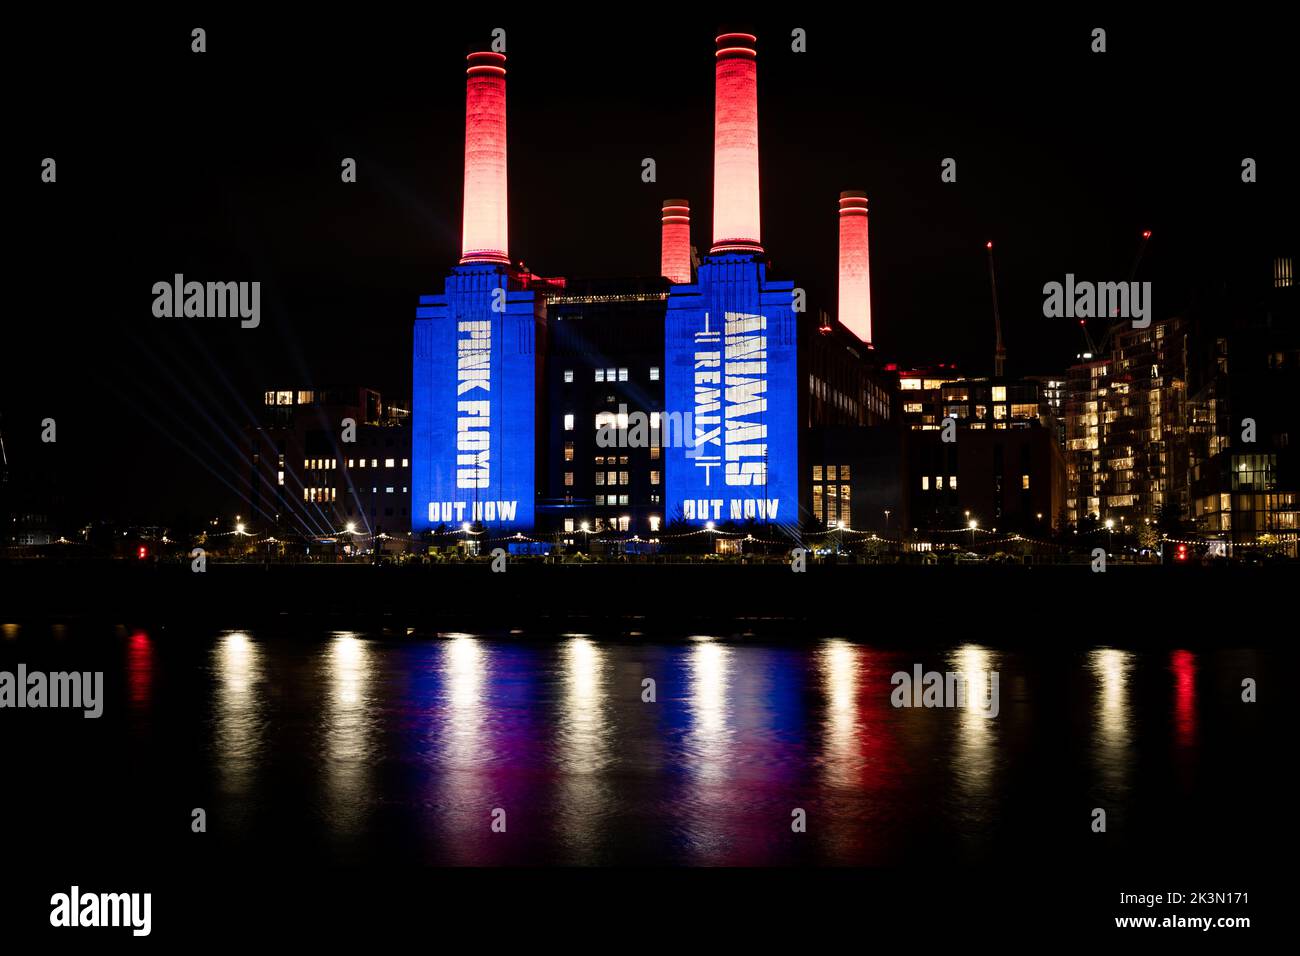 La centrale elettrica di Battersea nel sud di Londra è illuminata durante una prova di un espositore di luci per segnare il rilascio di Pink Floyd's Animals 2018 Remix. Data immagine: Martedì 27 settembre 2022. Foto Stock